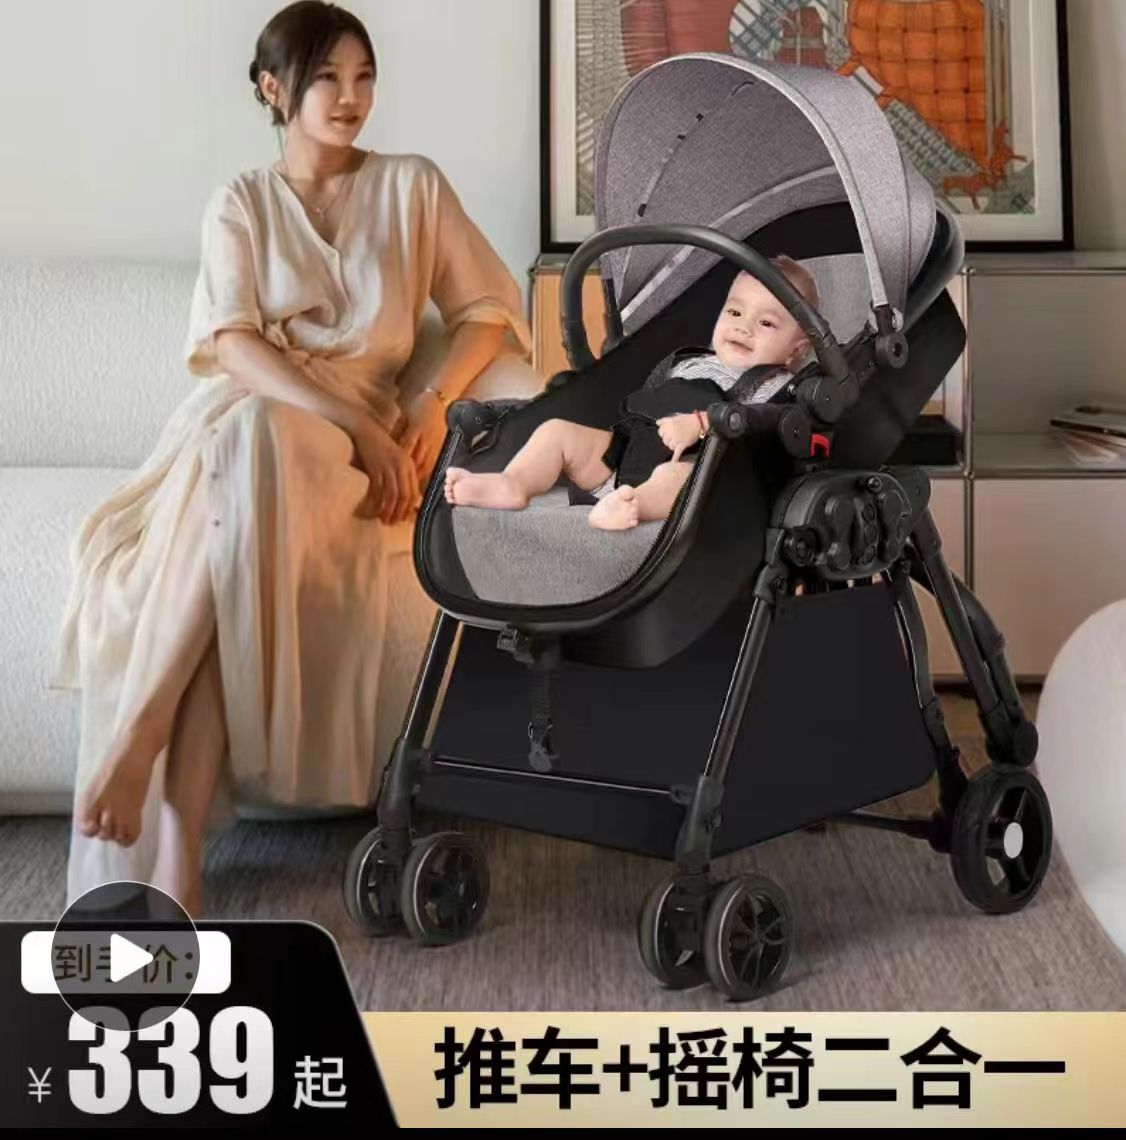 中高婴儿推车 推车加上摇椅二合一